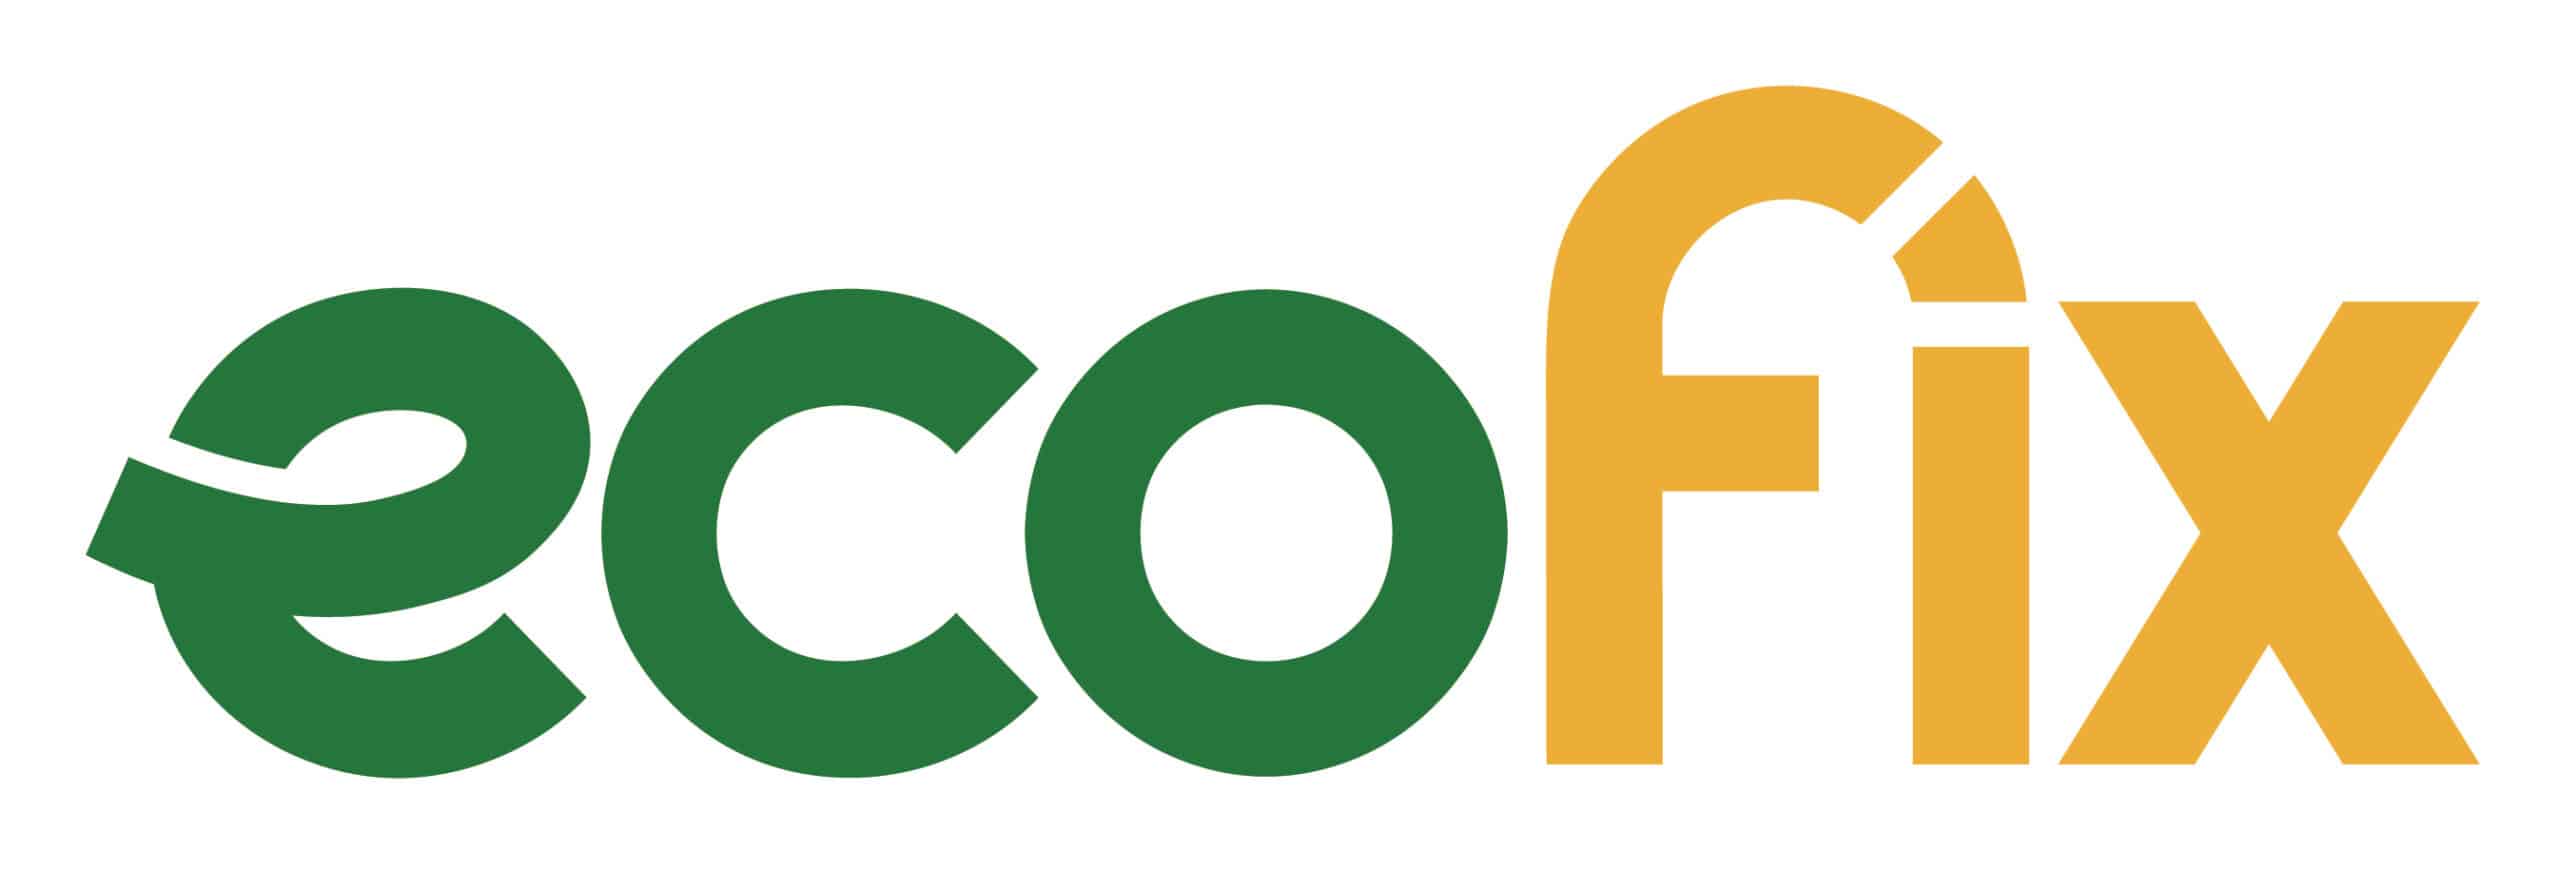 Ecofix Taxi Logo